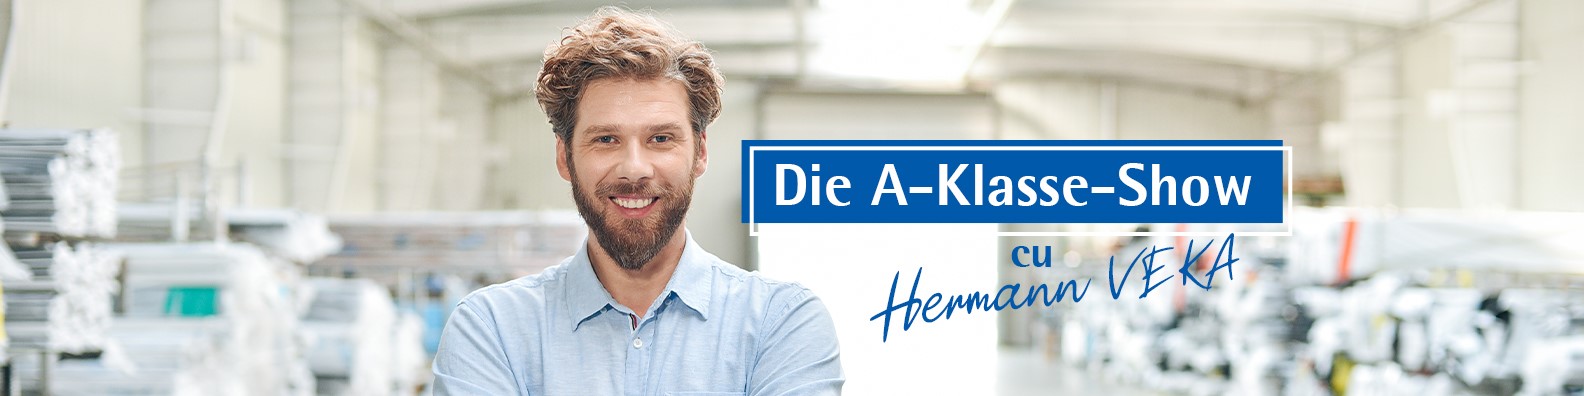 VEKA și Oxygen dau viață personajului german care se pricepe la ferestre, în serialul Die A-Klasse-Show, cu Hermann VEKA